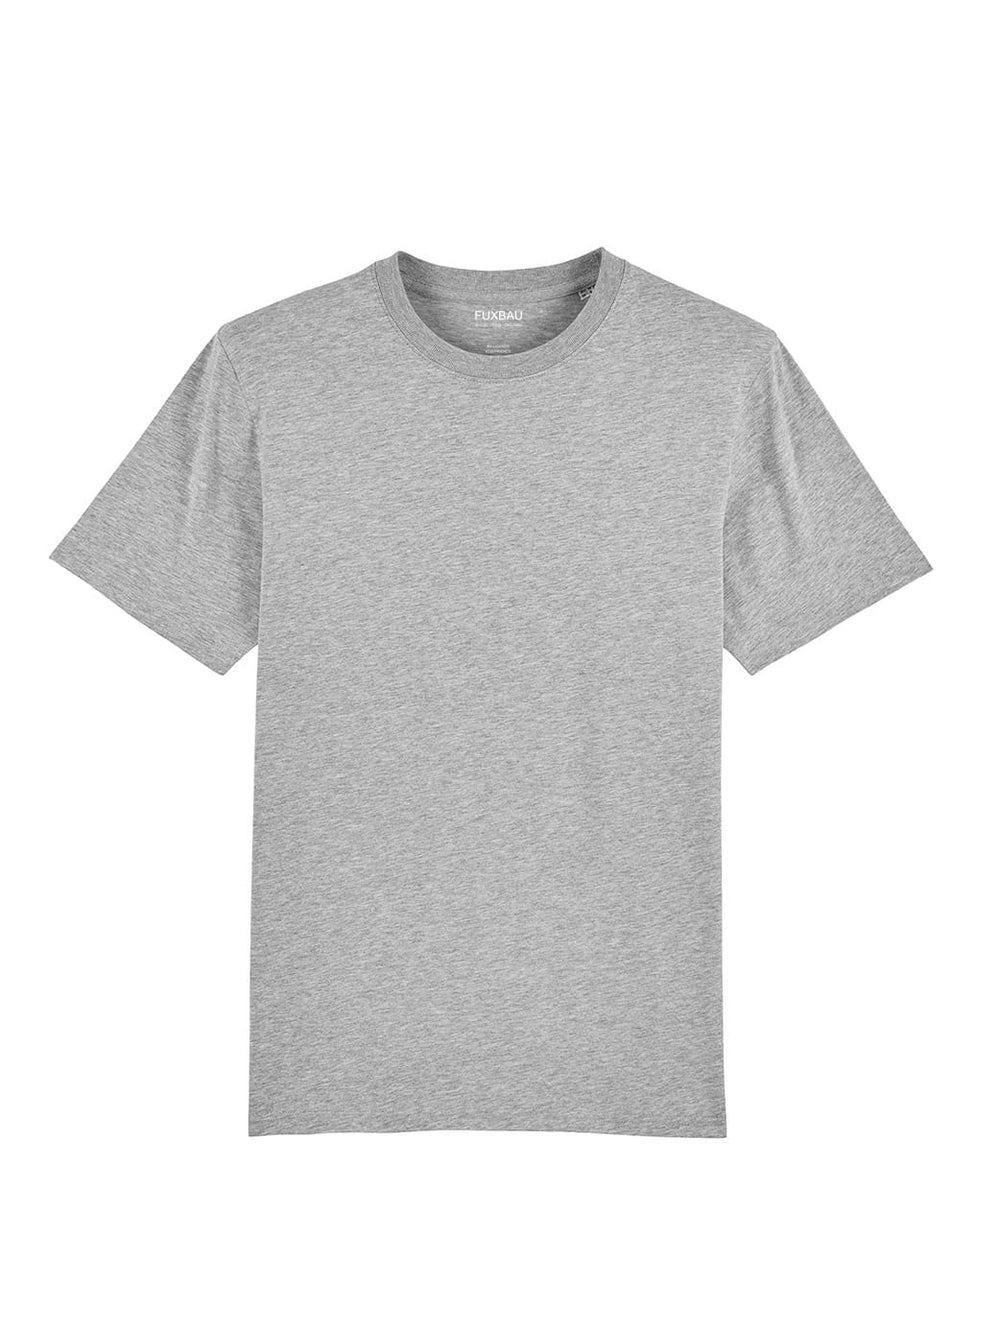 Nachhaltiges Fair Fashion Unisex Standard Basic T-Shirt in grau von FUXBAU aus 100% GOTS zertifizierter Biobaumwolle im 3er Pack.